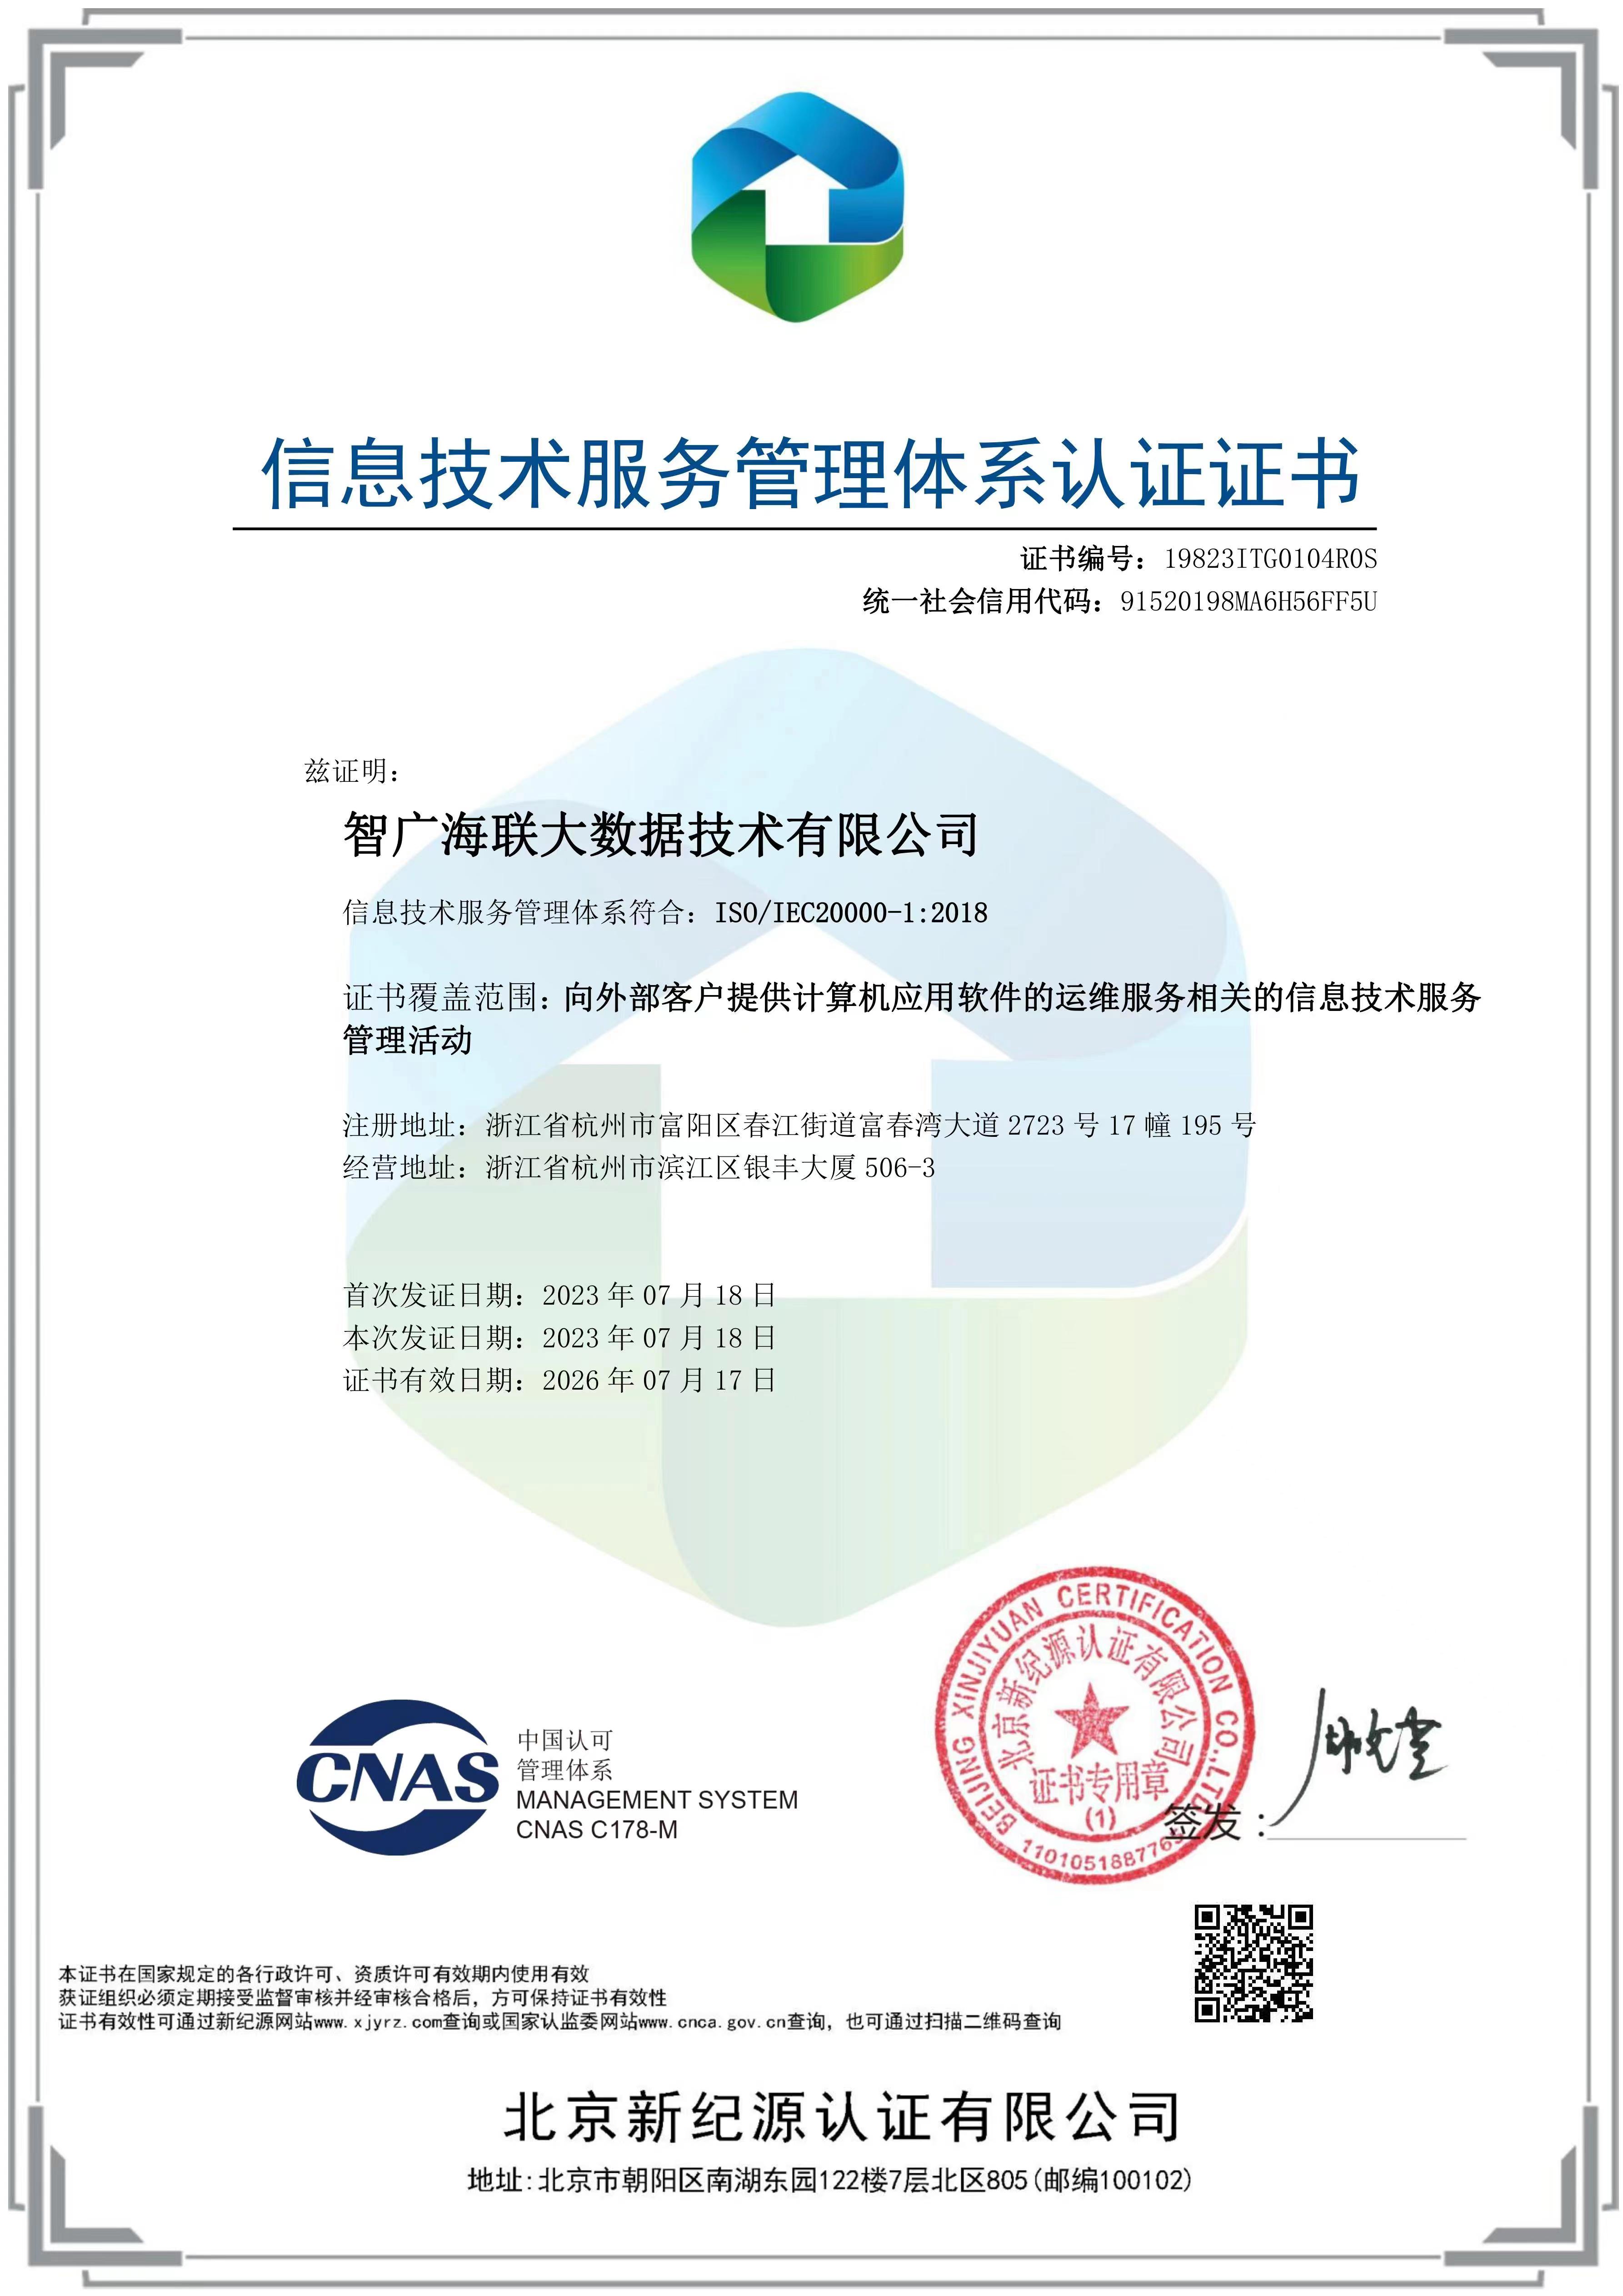 智广海联再获信息安全服务ISO双体系认证